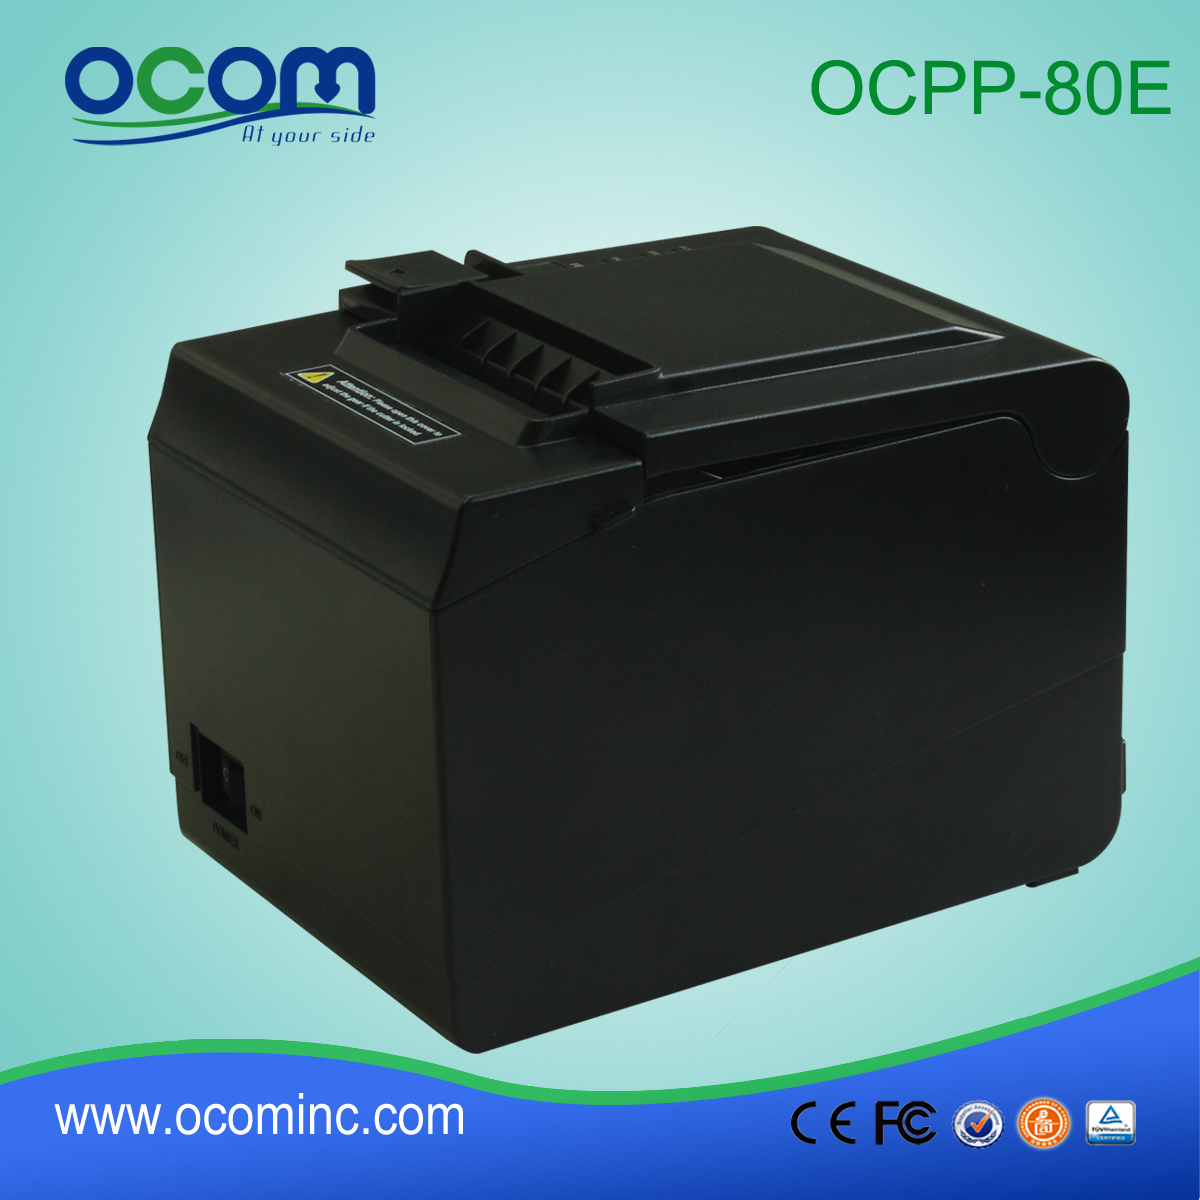 OCPP-80E --- Chiny fabryka wysokiej jakości drukarka termiczna Android